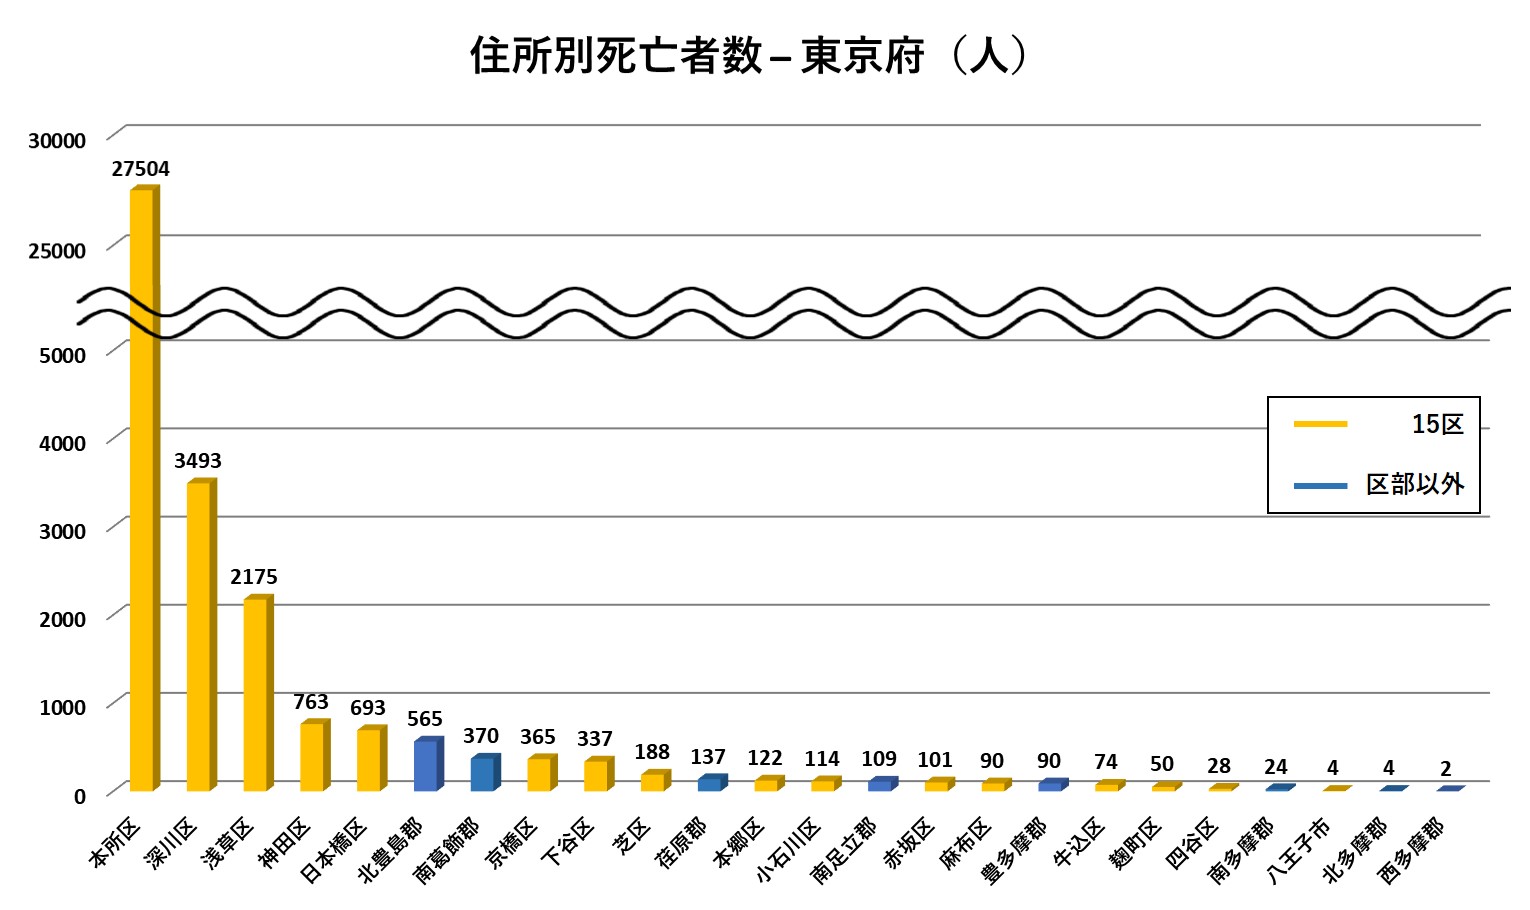 図1．東京府での住所別死亡者数（人）の棒グラフ